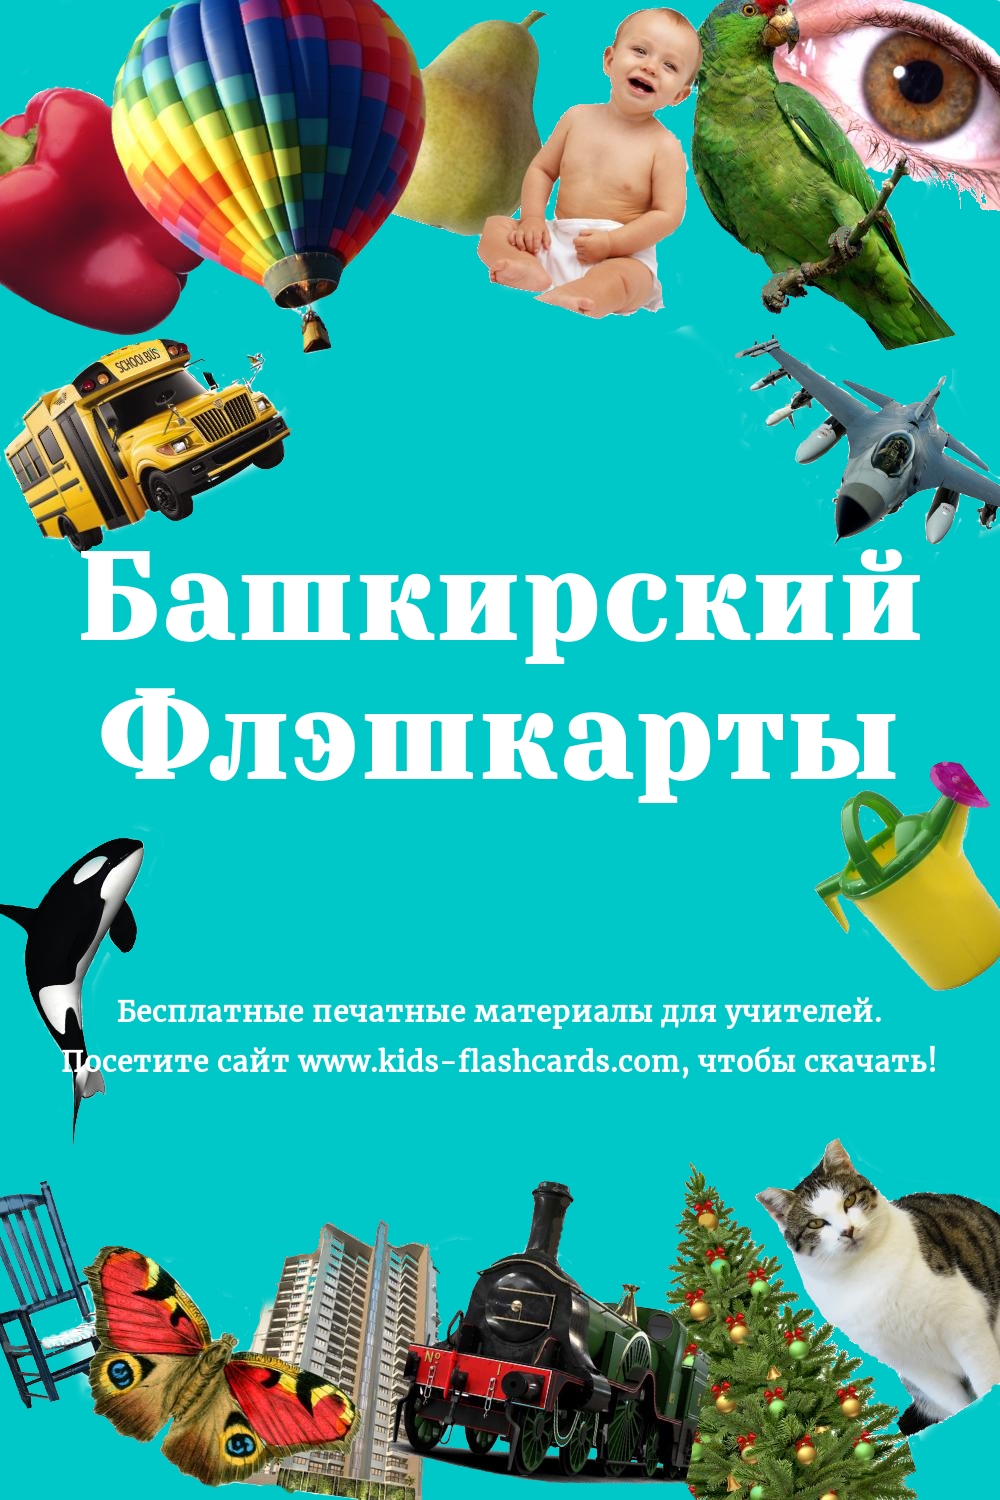 Башкирский язык - бесплатные материалы для печати